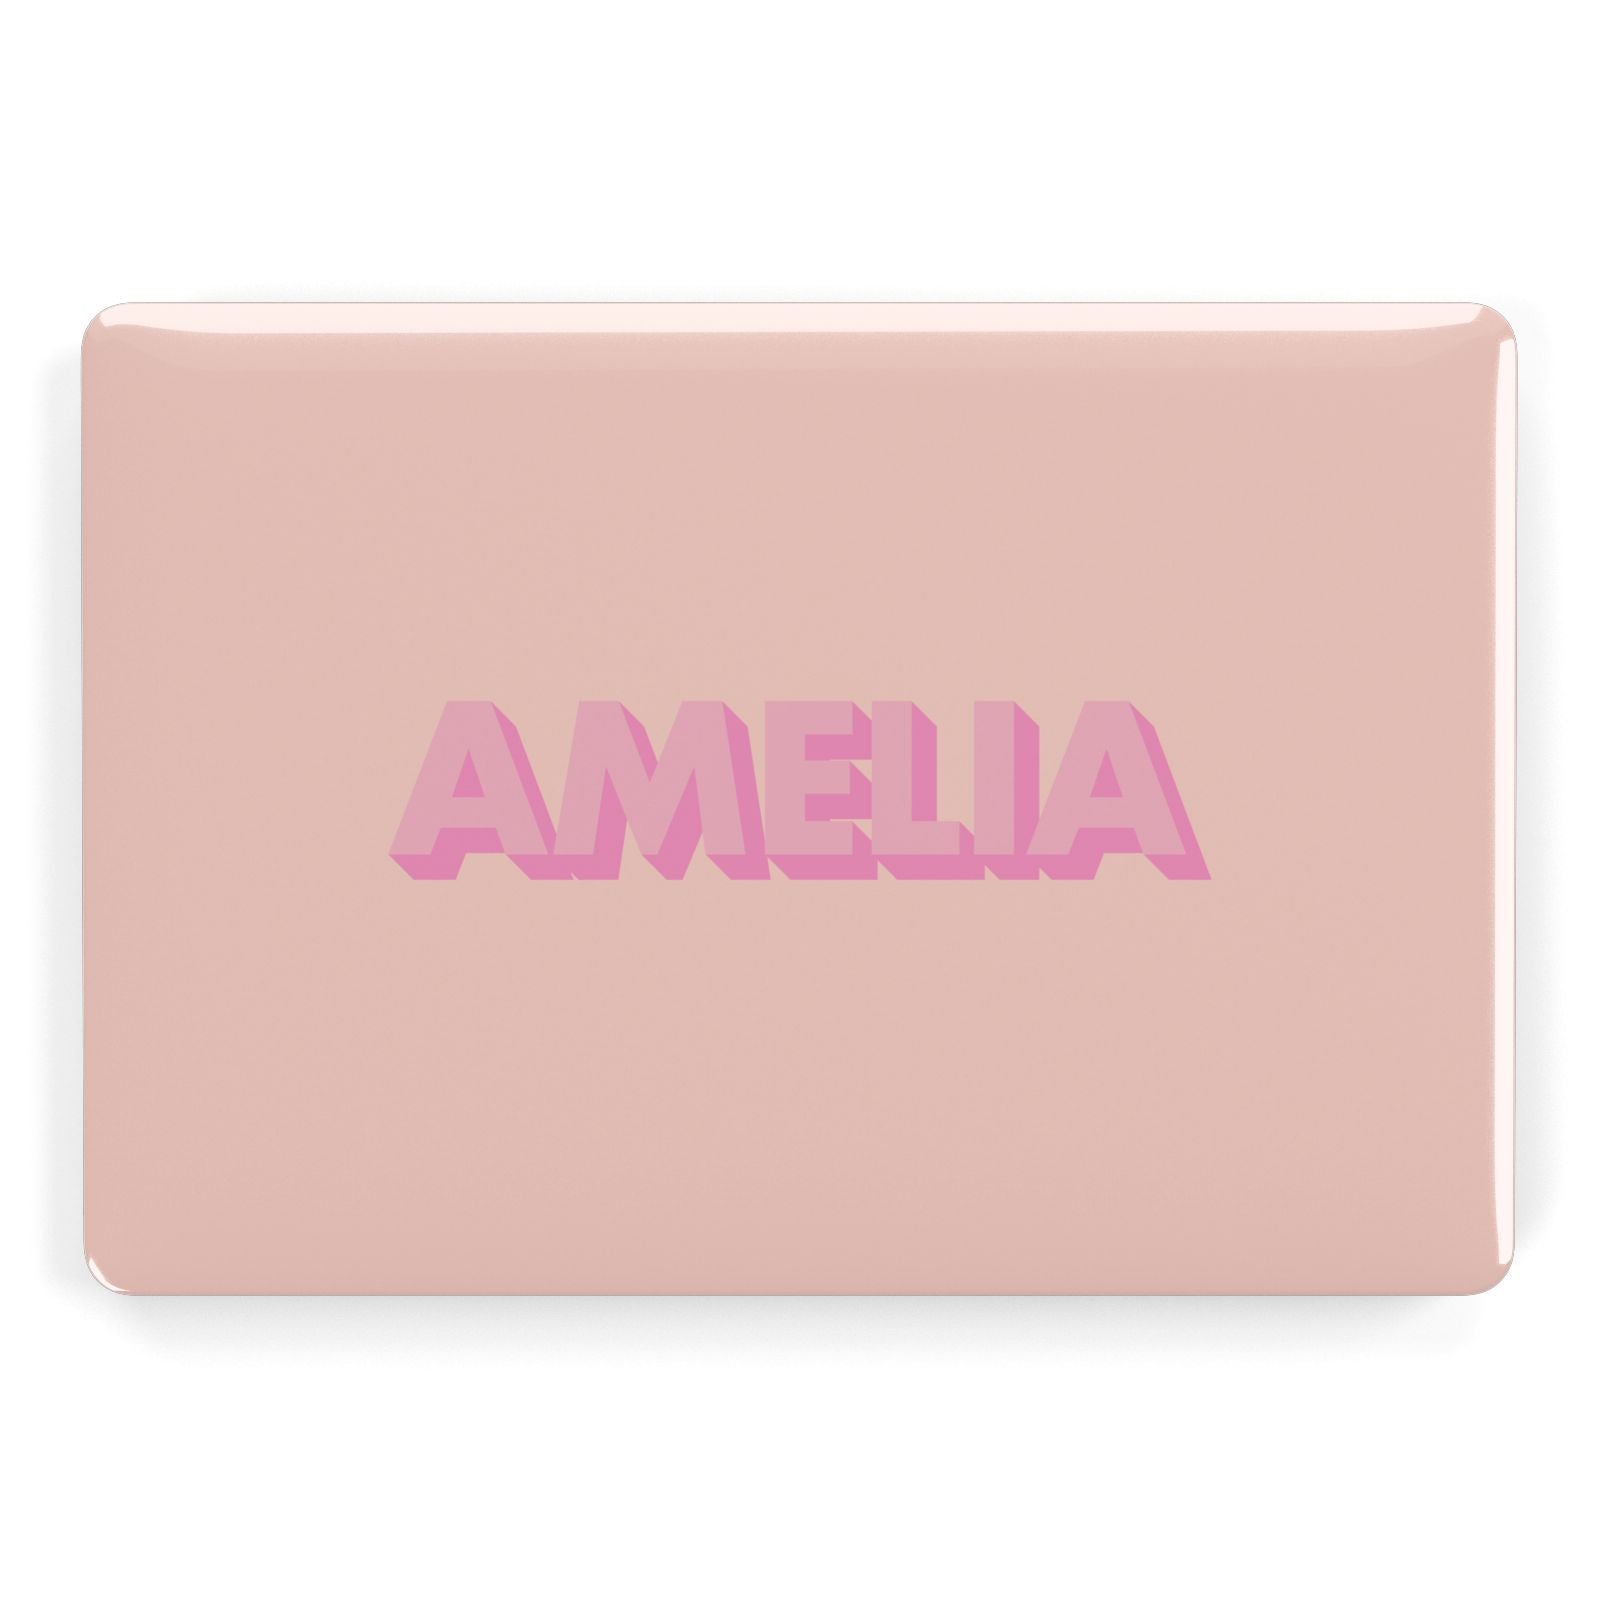 Personalised Peach Pink Name Apple MacBook Case